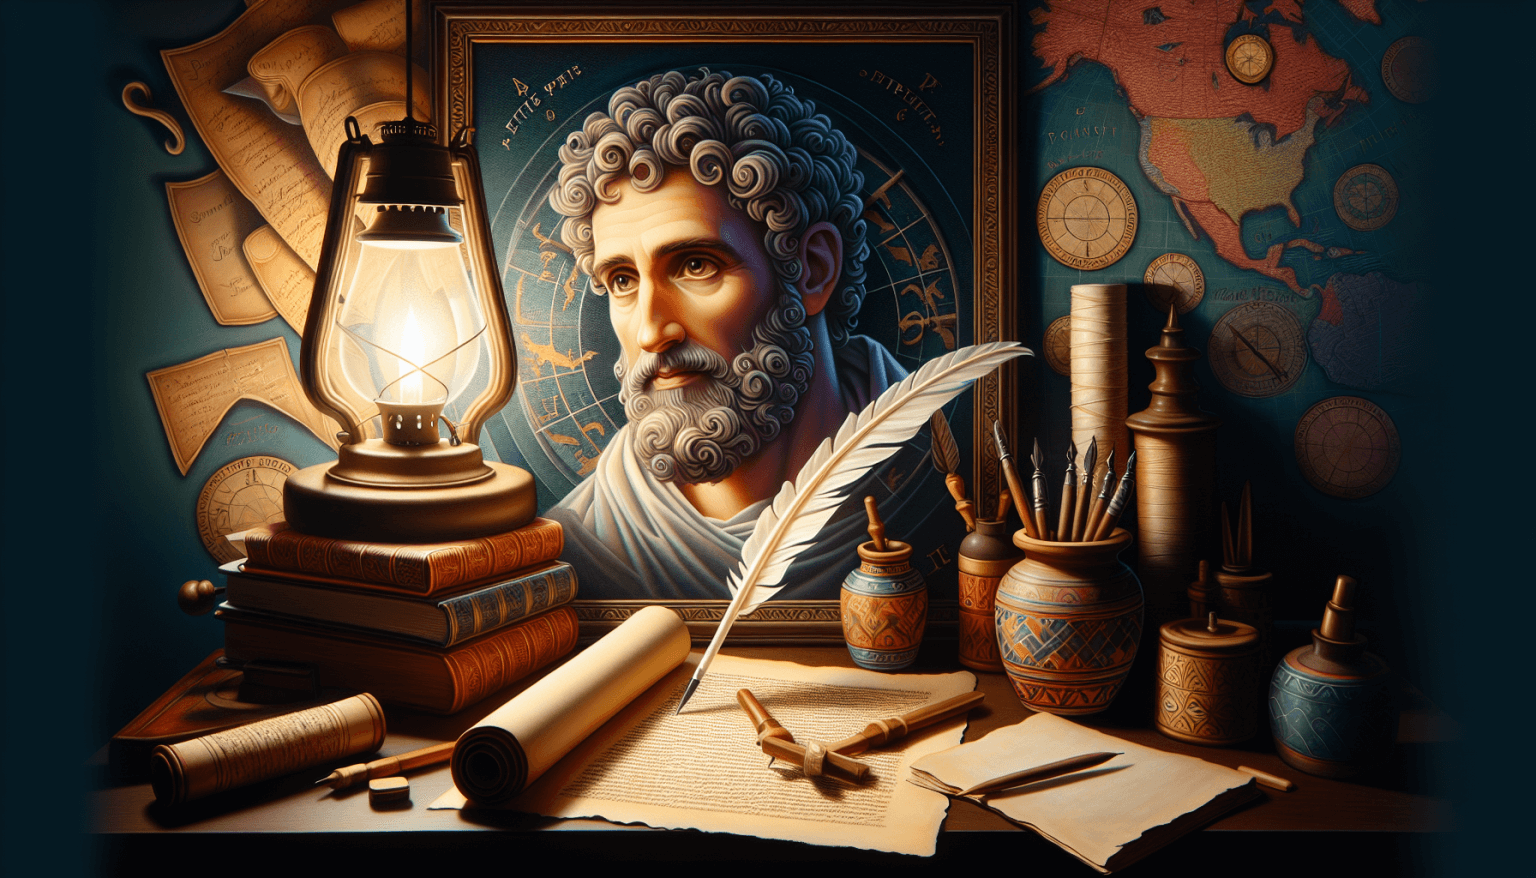 Un retrato estilizado del Apóstol Pablo en un taller de escribas, rodeado de pergaminos y plumas, con un mapa antiguo de sus viajes misioneros en el fondo, iluminado por la luz suave de una lámpara de